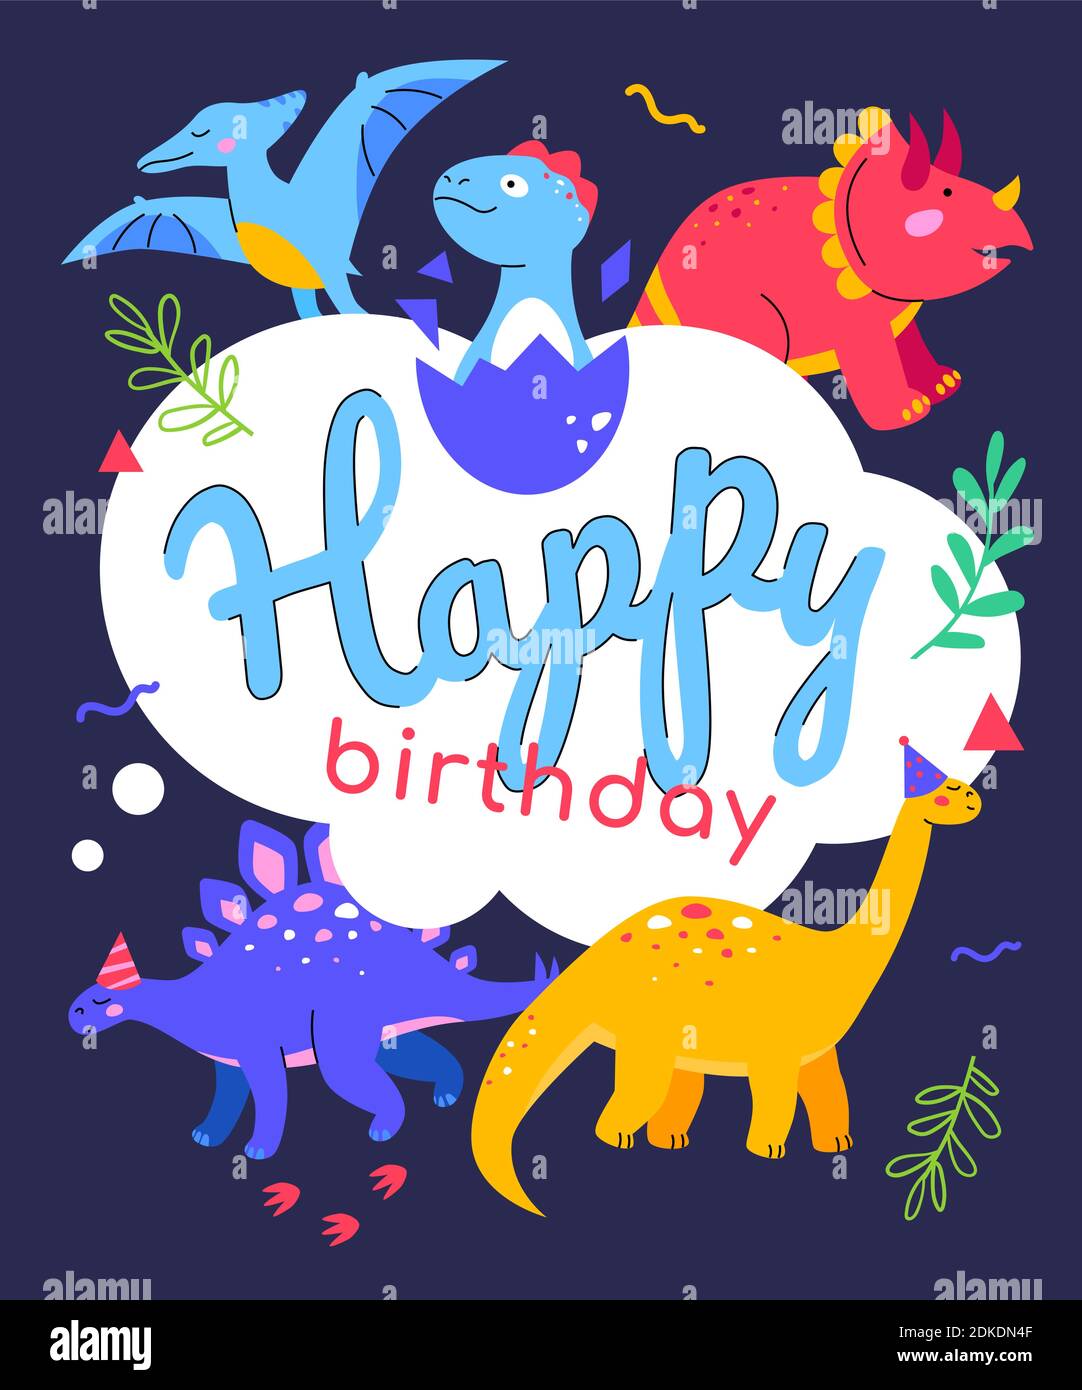 Joyeux anniversaire - illustration de style plat avec caractères sur fond bleu. Carte de vœux avec idée de dinosaures. Images d'ornitosaurus, stegosa Illustration de Vecteur